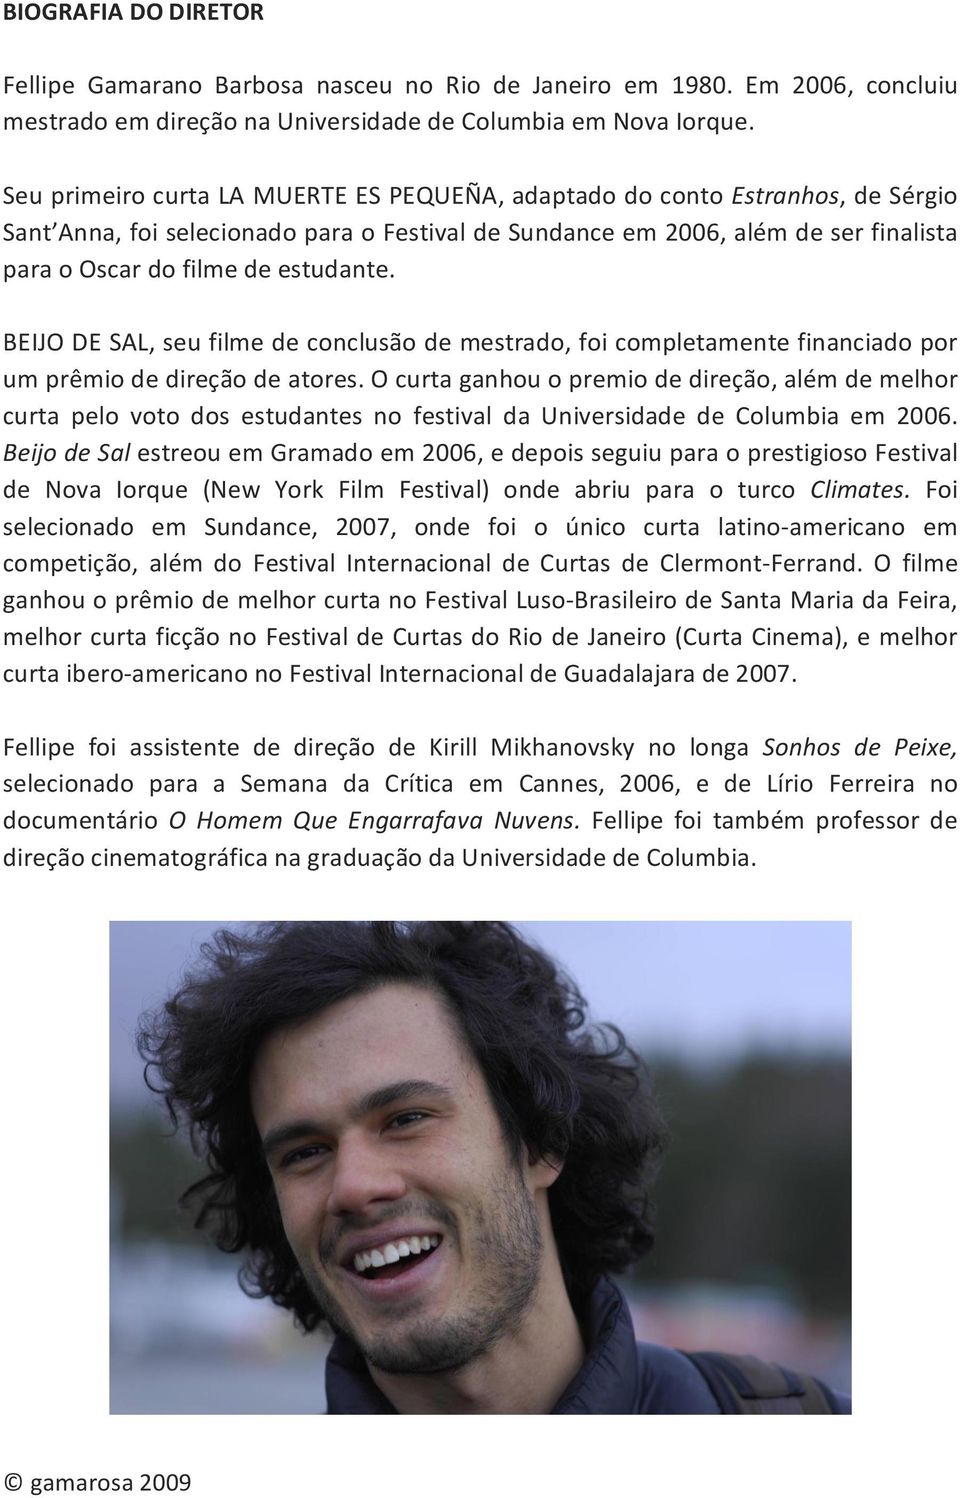 estudante. BEIJO DE SAL, seu filme de conclusão de mestrado, foi completamente financiado por um prêmio de direção de atores.